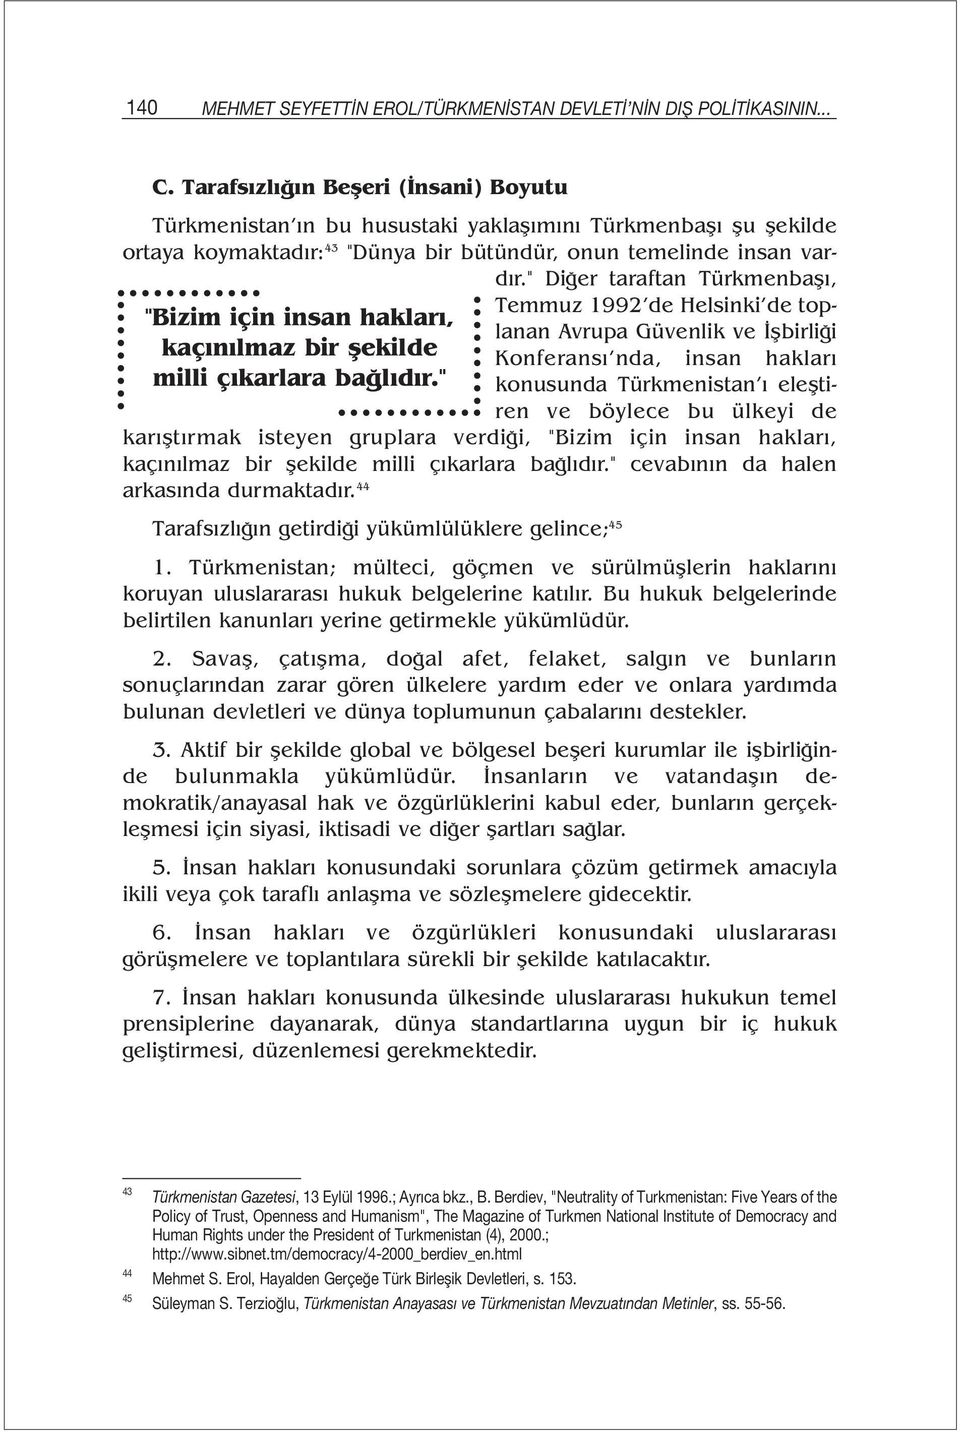 " Diğer taraftan Türkmenbaşı, "Bizim için insan hakları, kaçınılmaz bir şekilde milli çıkarlara bağlıdır.